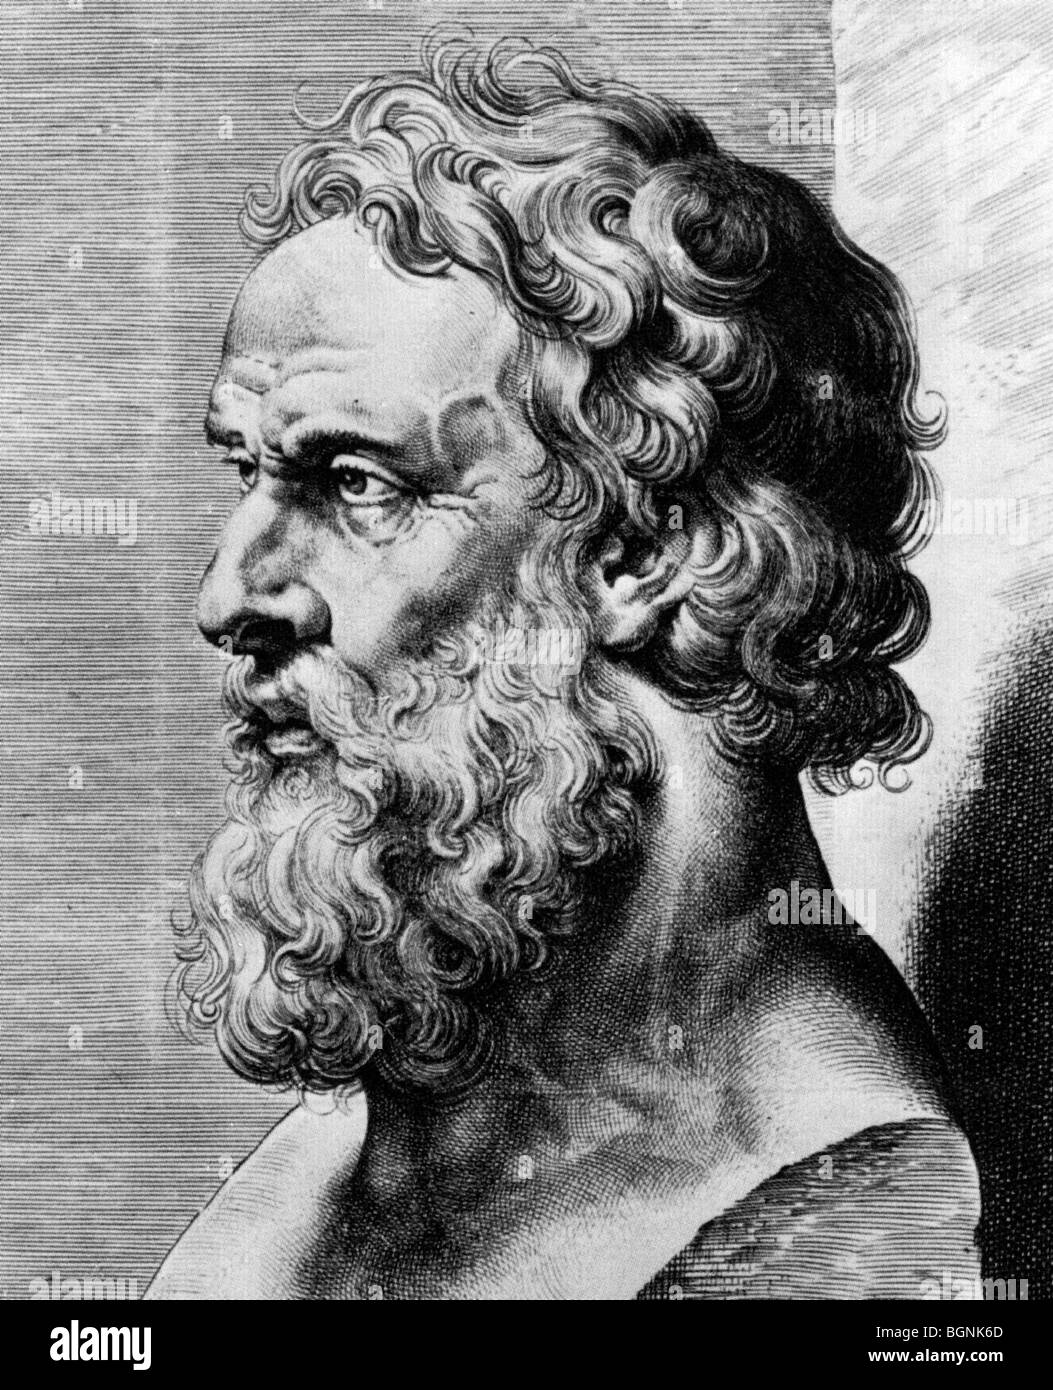 PLATO - 18e siècle gravure d'un buste du philosophe grec (c 428 c- 348 avant J.-C.) Banque D'Images